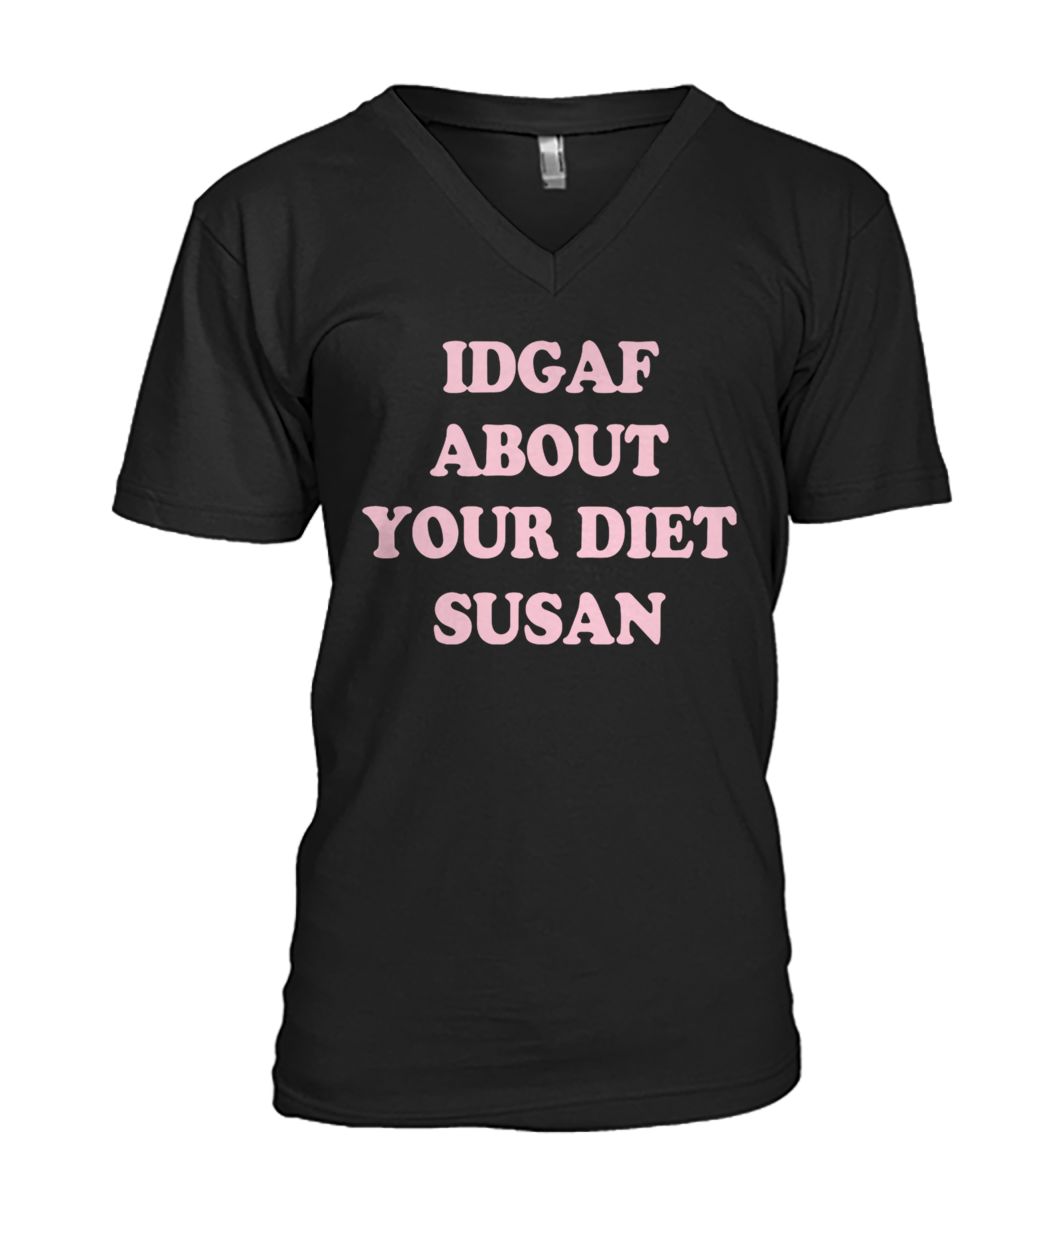 IDGAF about your diet susan mens v-neck